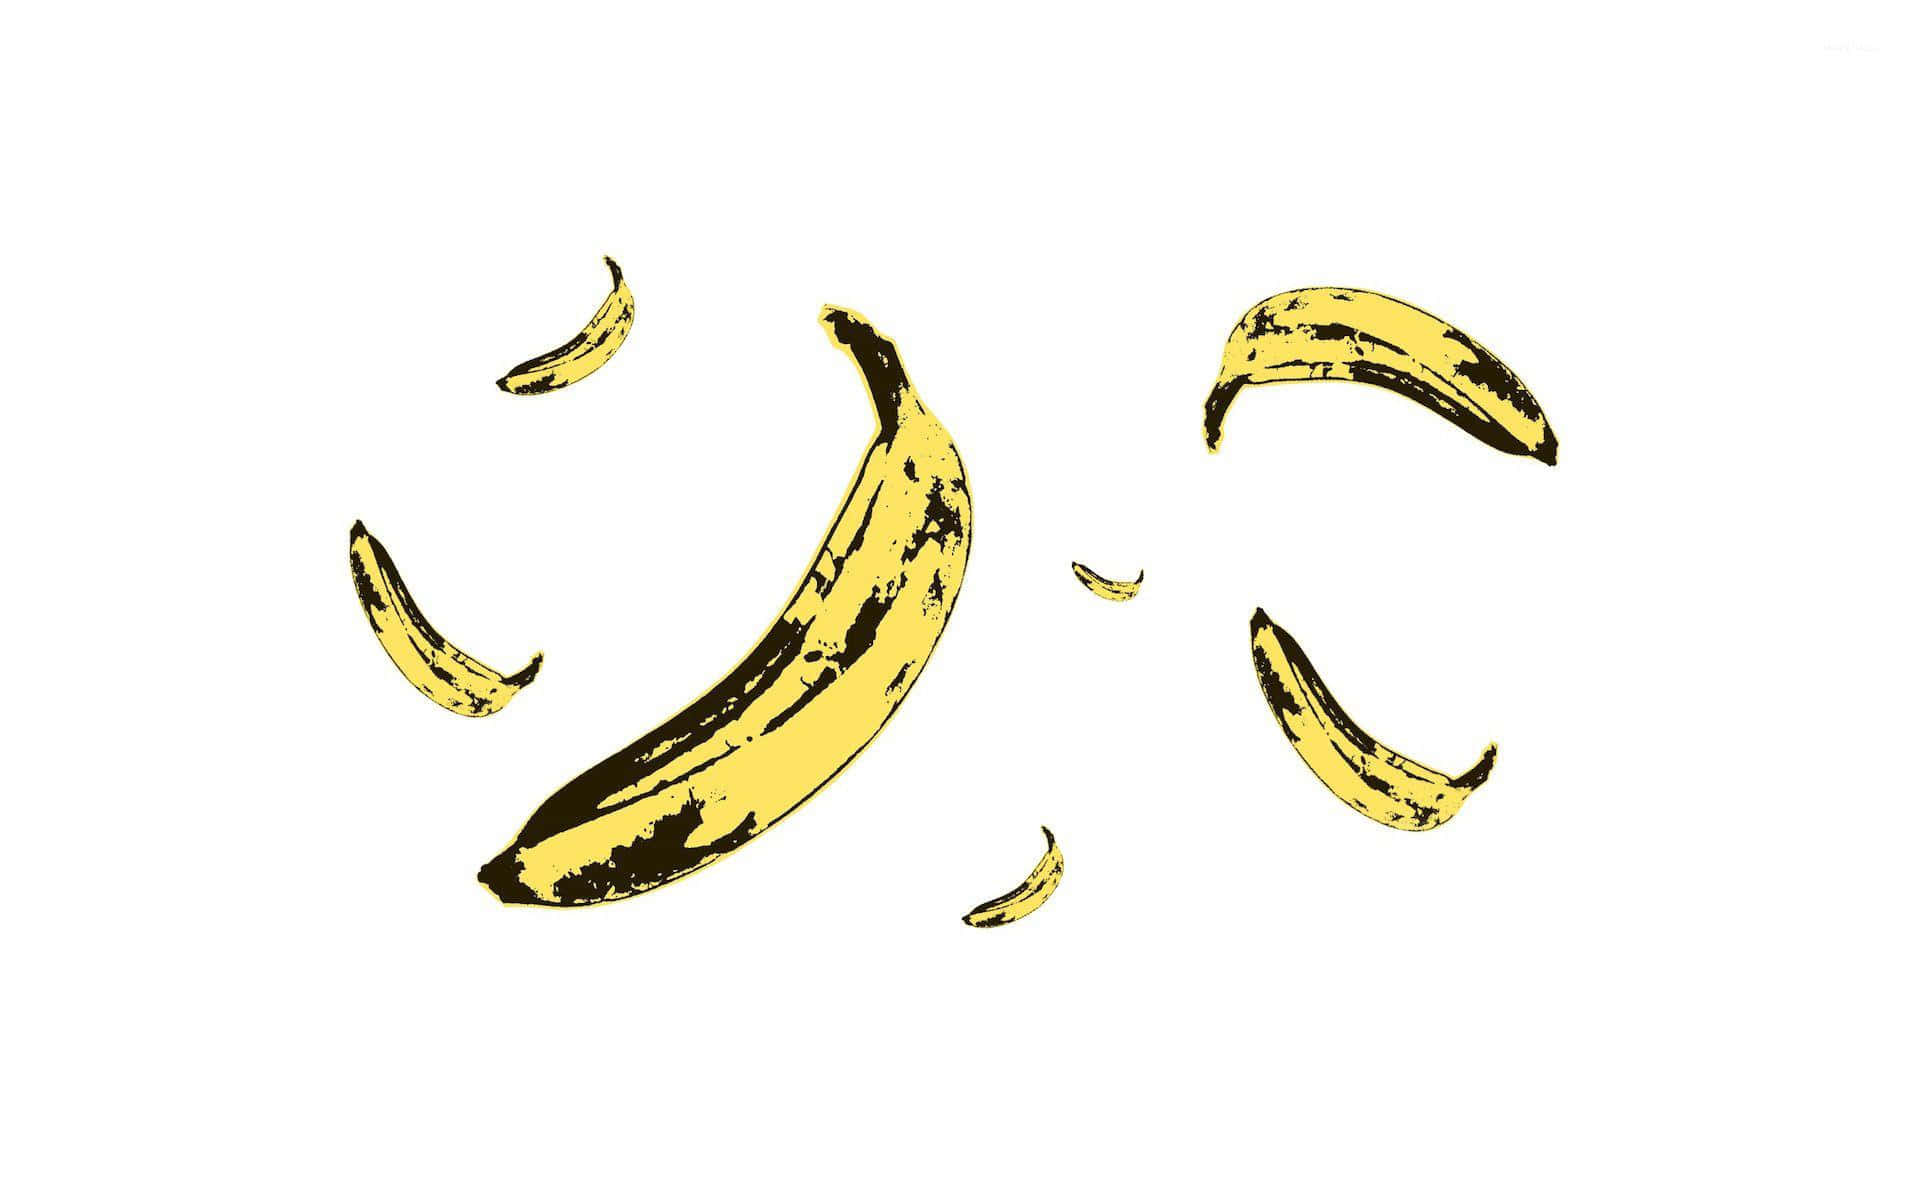 Bananbilder